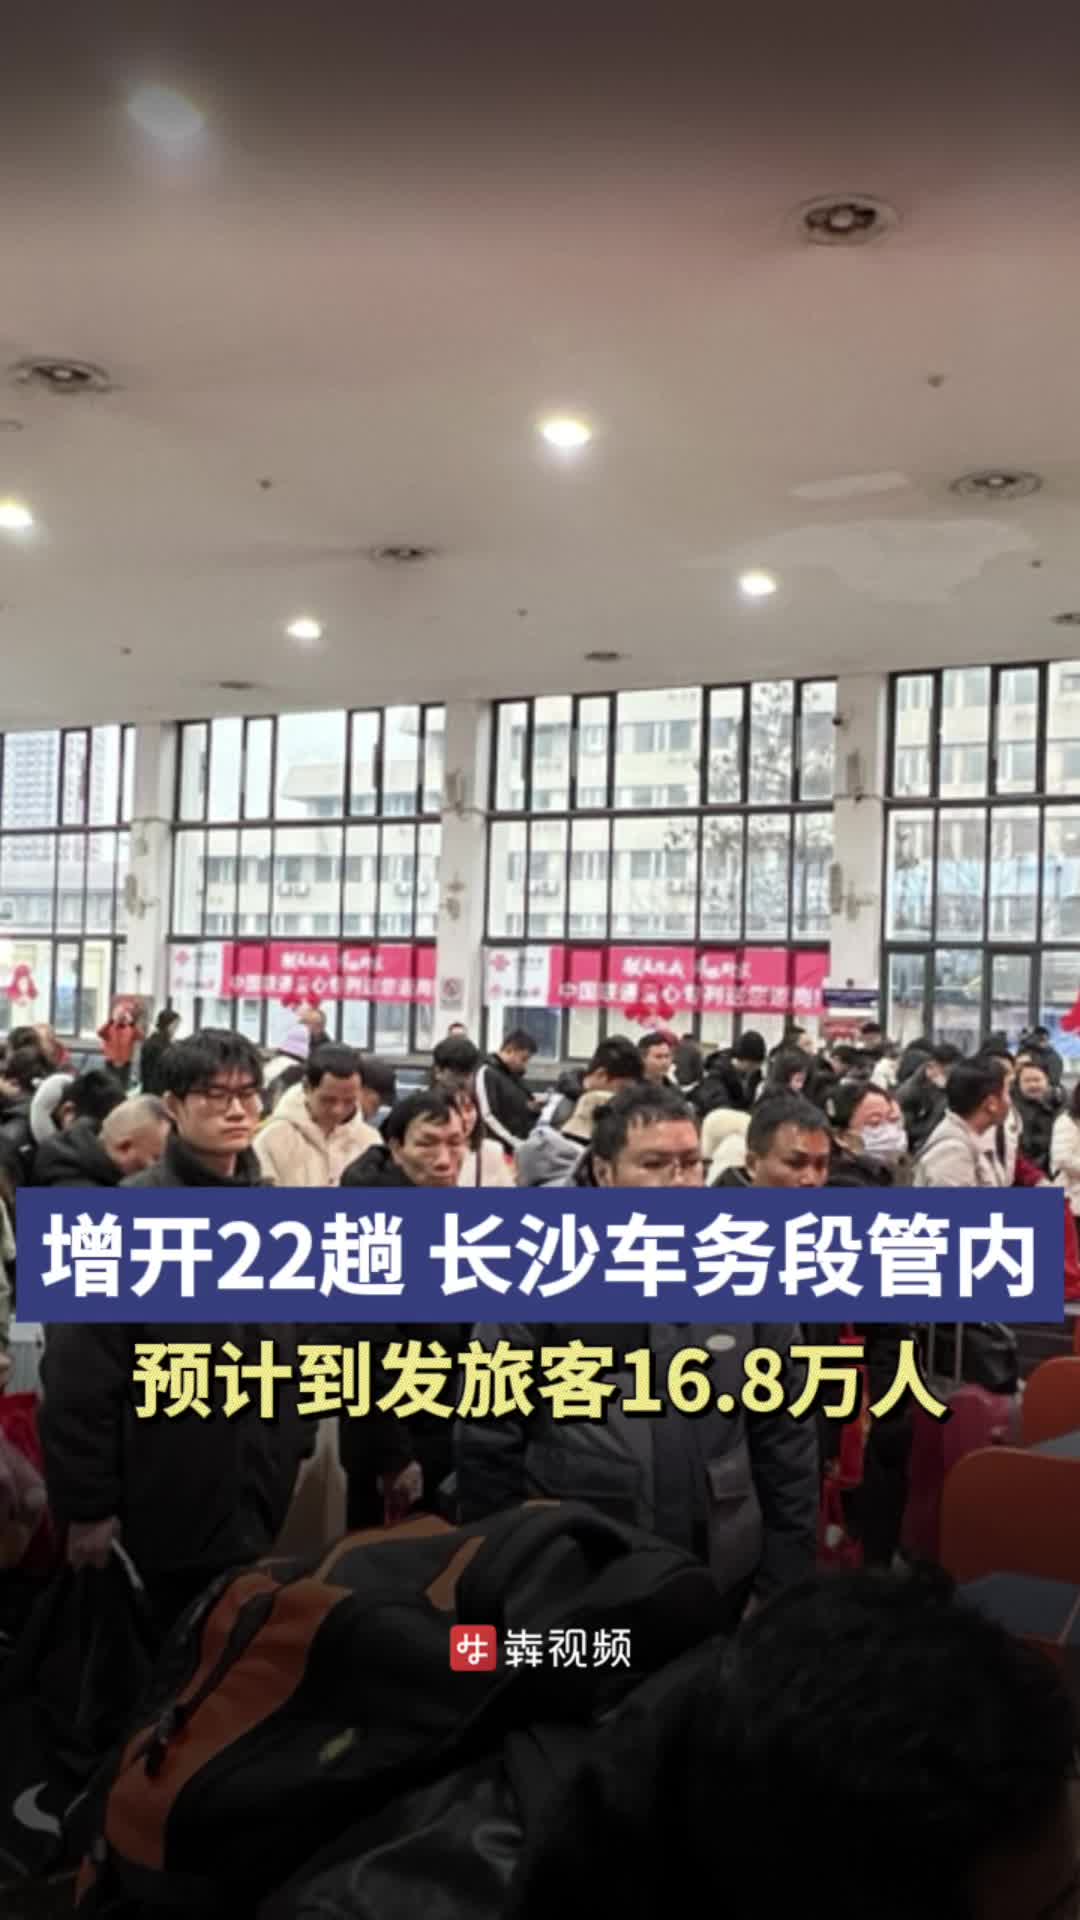 清明时节丨长沙车务段将增开22趟始发列车，涉及岳阳、常德等地